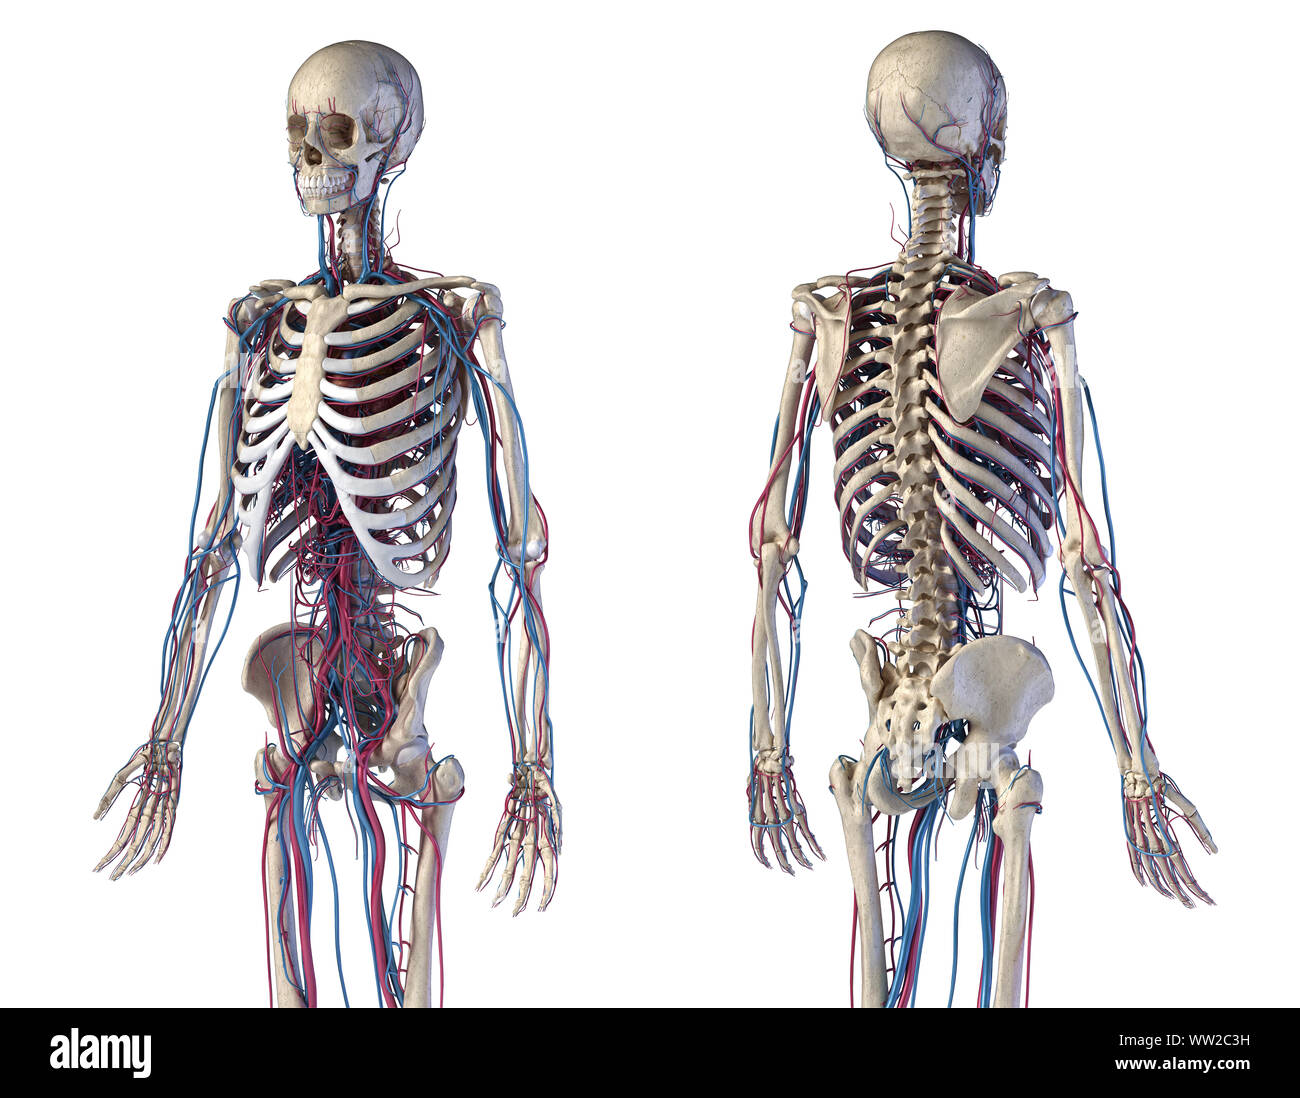 L'anatomie du corps humain. 3d illustration des complications osseuses et cardiovasculaire. Vues avant et arrière. Sur fond blanc. Banque D'Images